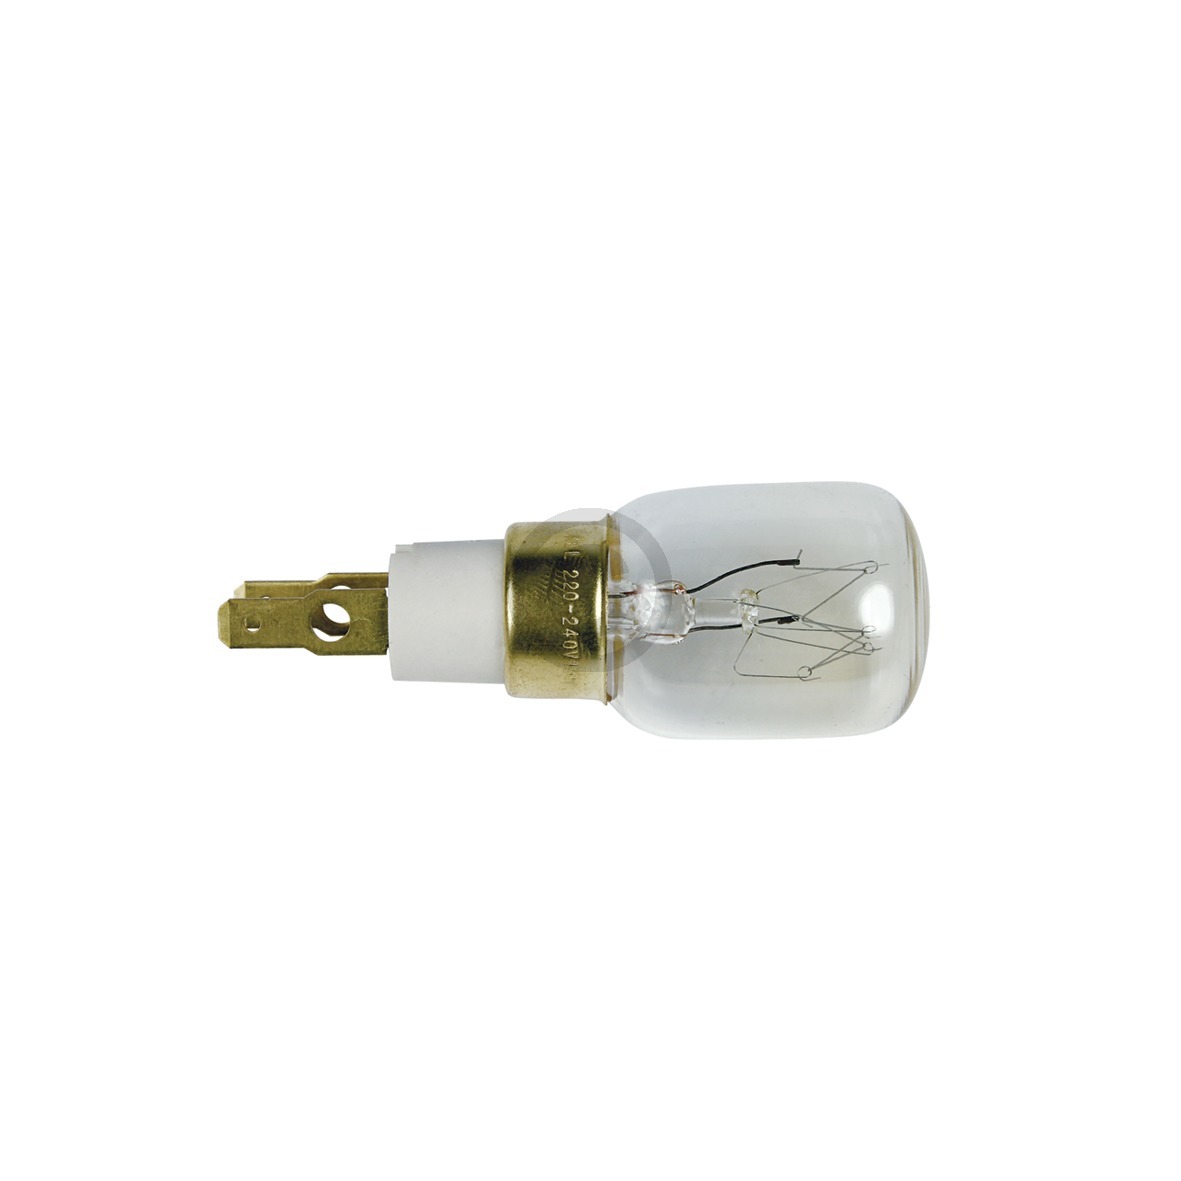 Lampe TClick T25 Whirlpool 484000000979 15W 220-240V für Kühlschrank